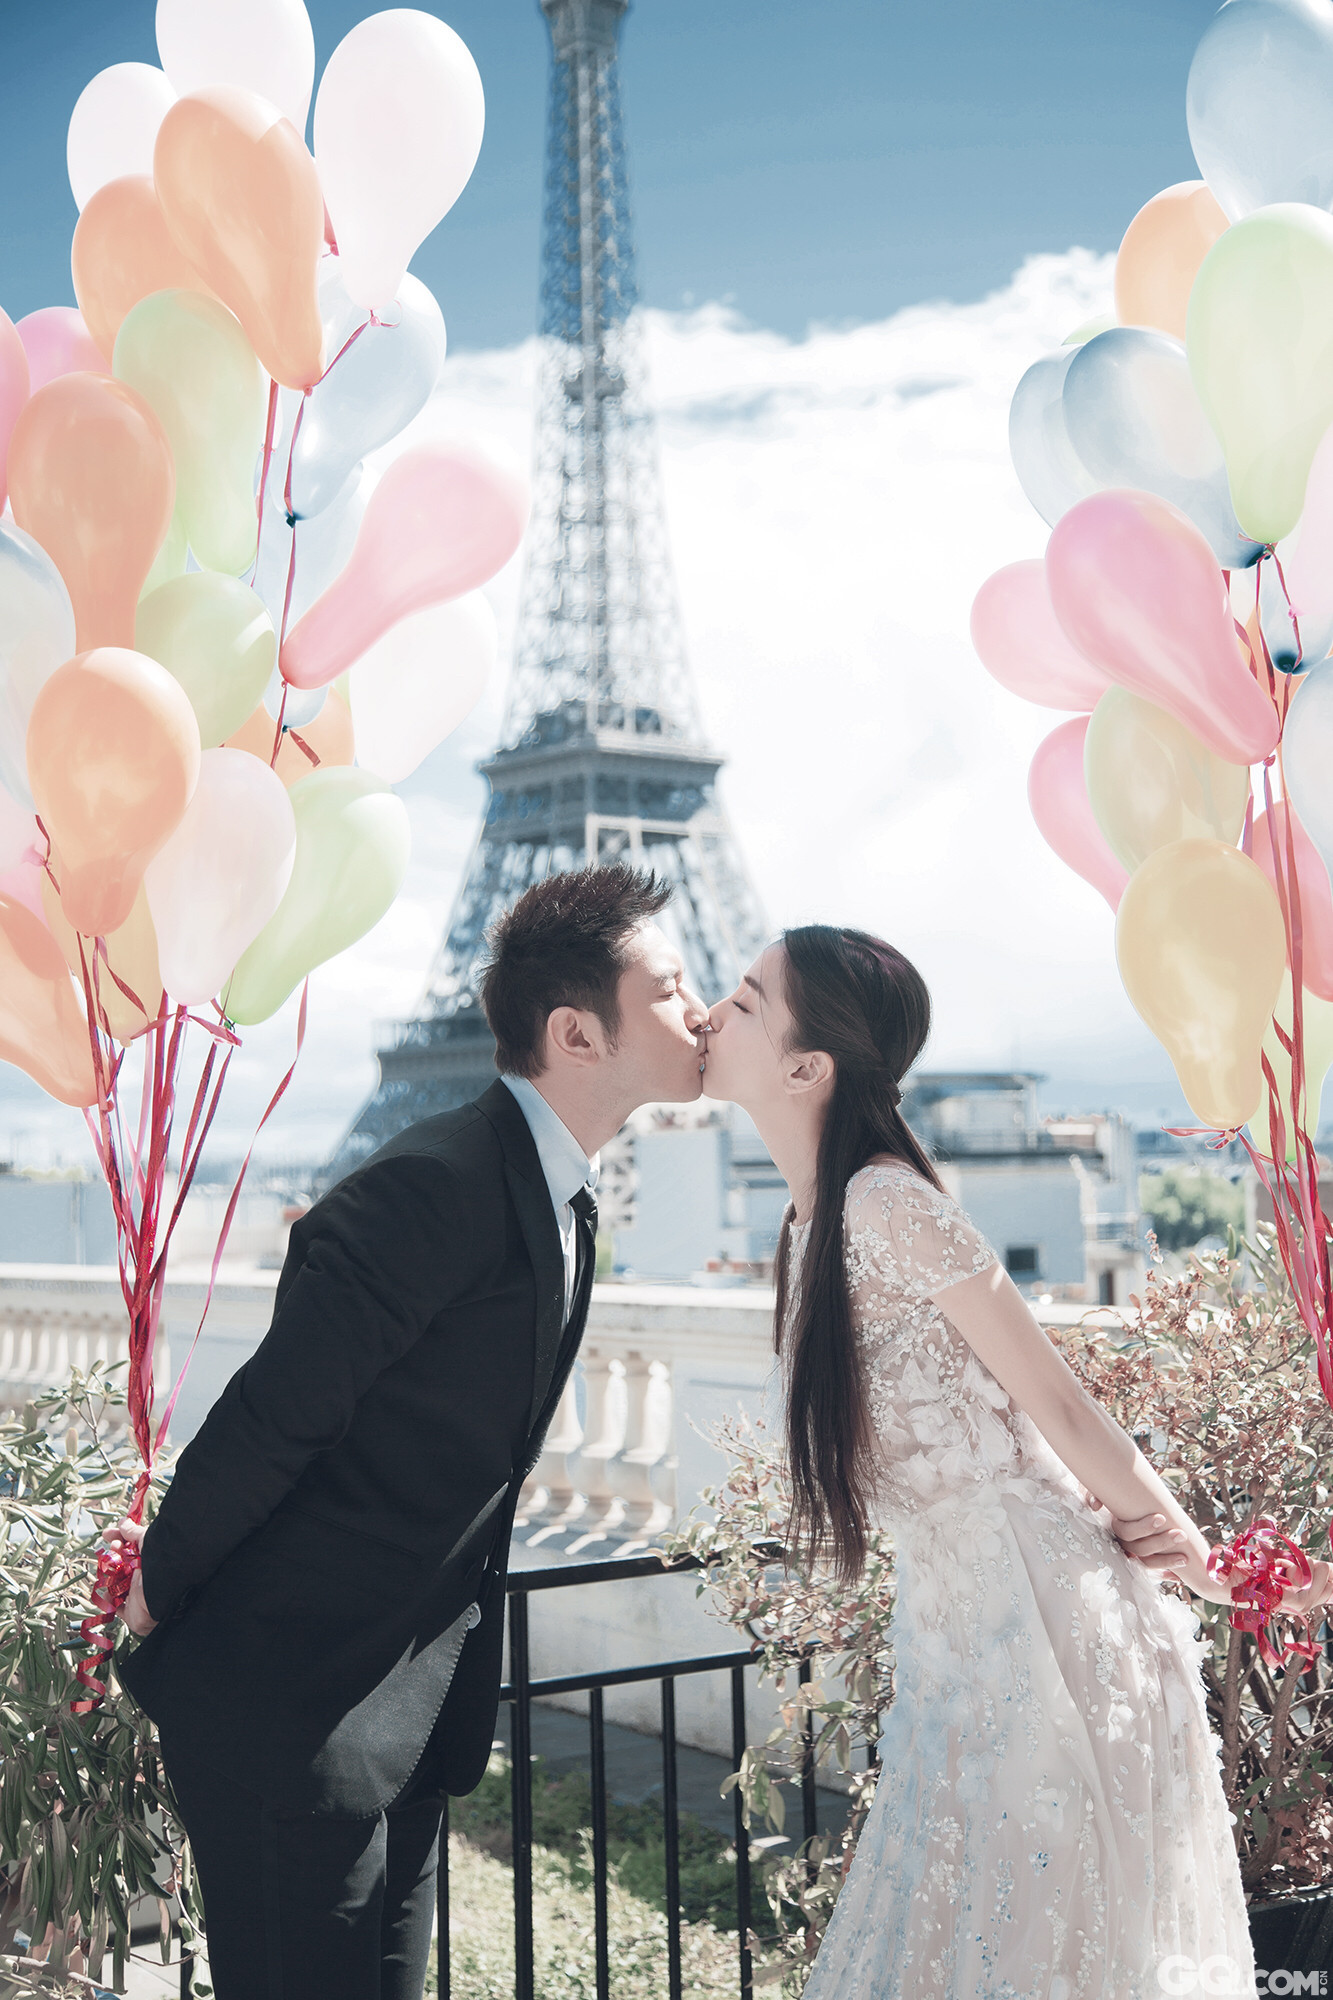 黄晓明与Angelababy将在全民瞩目下于上海展览中心举行梦幻婚礼。8日上午，网上提前曝光一组二人在法国拍摄的唯美婚纱照。在埃菲尔铁塔的见证下，黄晓明和Angelababy甜蜜拥吻，浪漫指数破表。